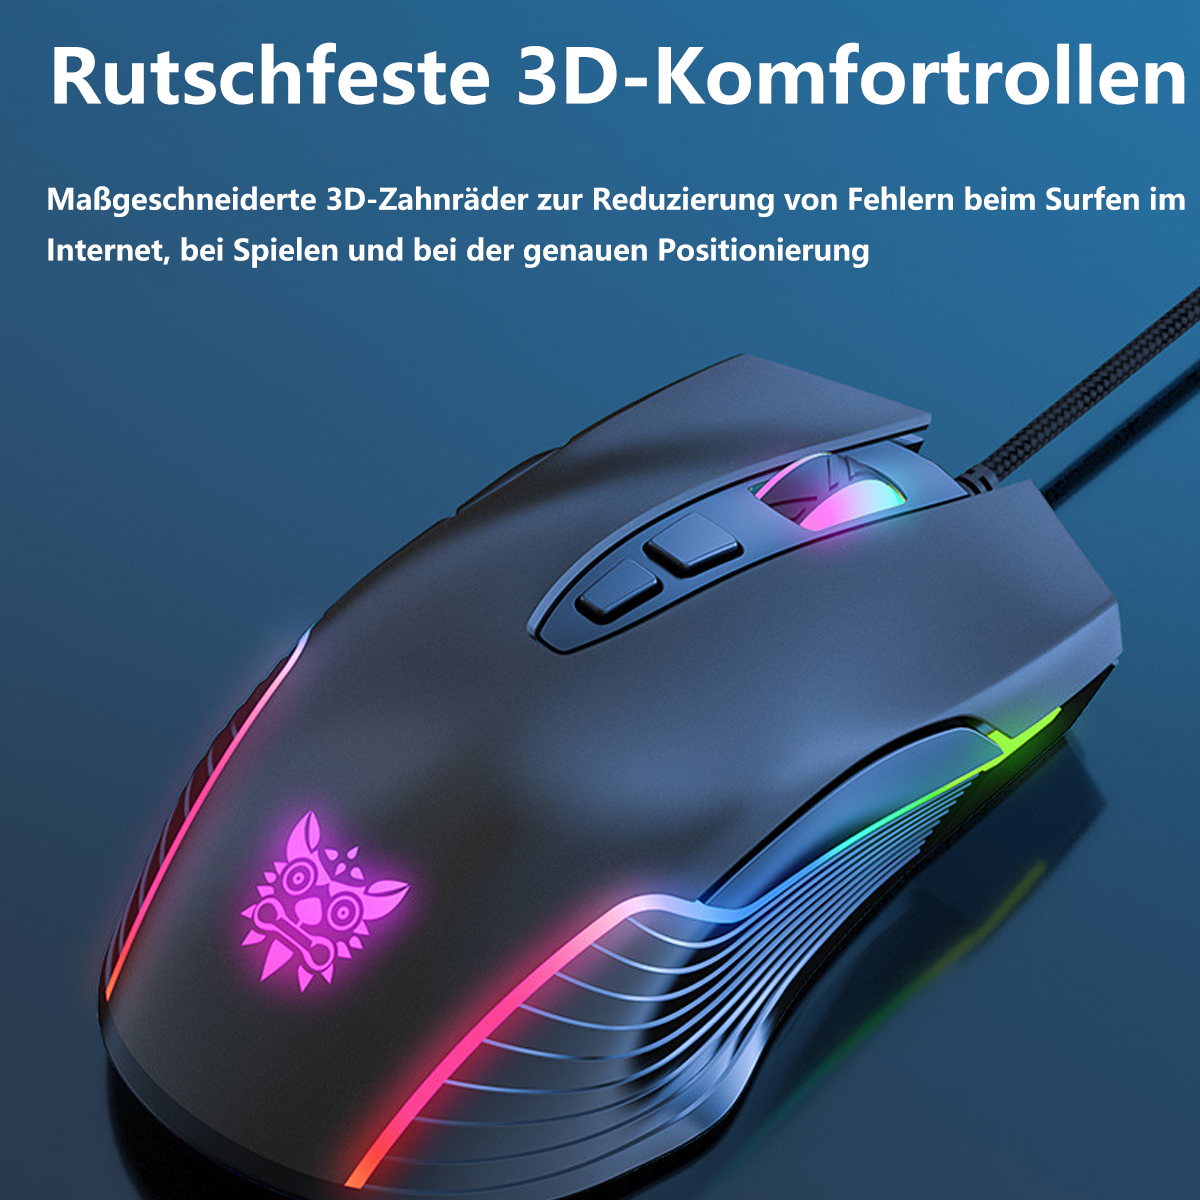 SYNTEK Maus white Licht Computer emittierende mechanische Büro RGB-Maus weiß verdrahtet Maus, Gaming Gaming